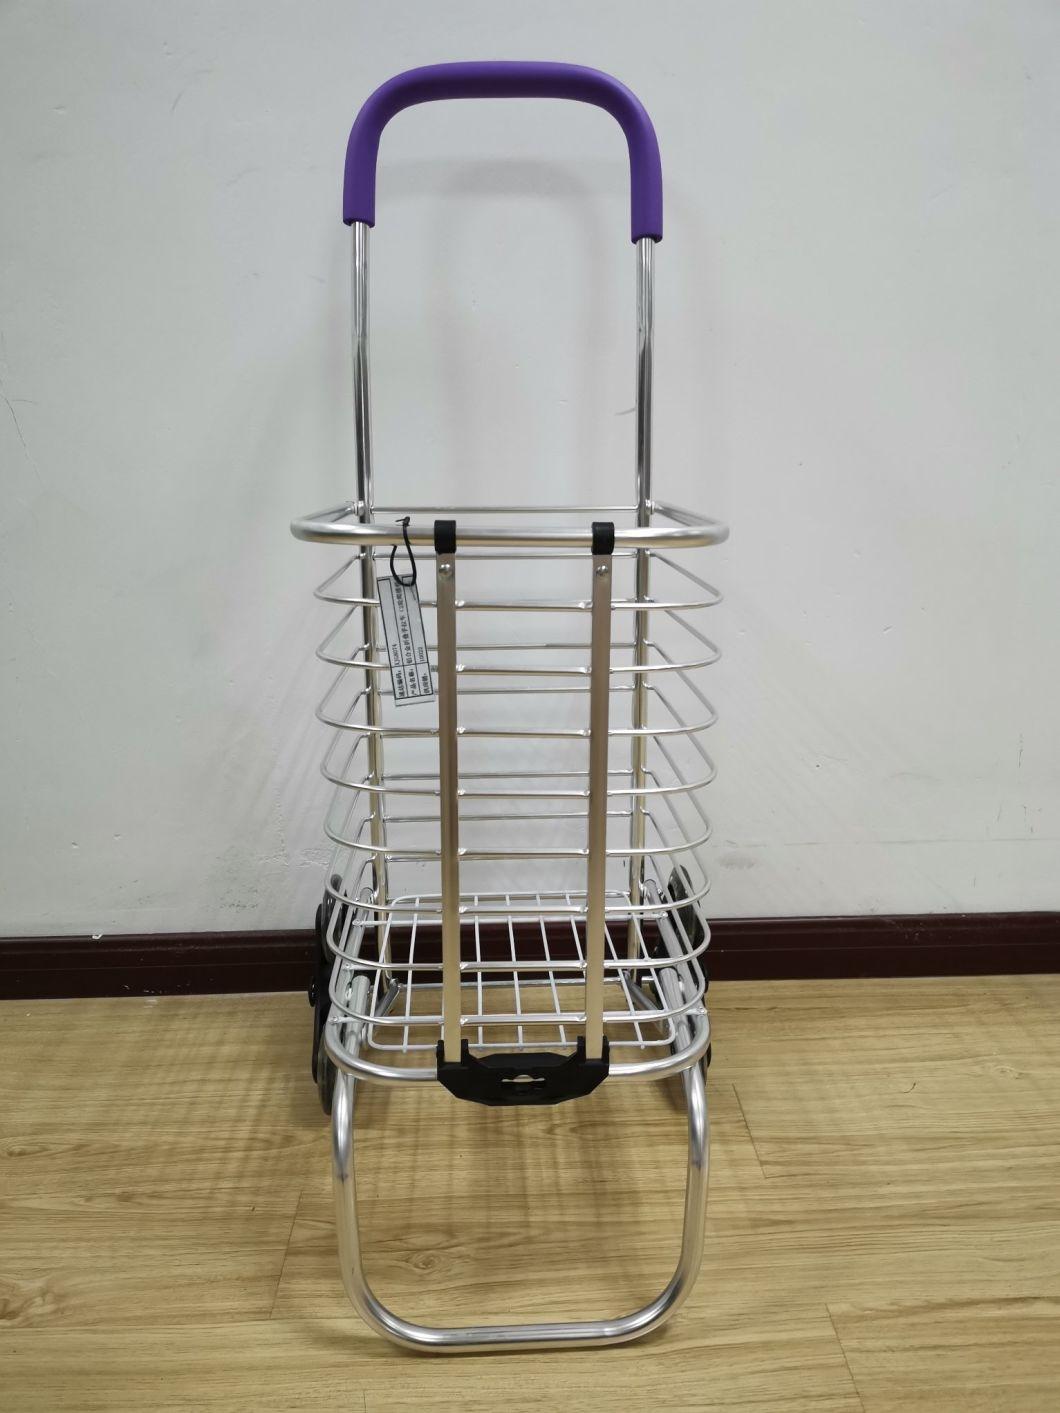 Factory Popular Aluminum Lightweight Folding Stair Climber Cart for Seniors as Gift